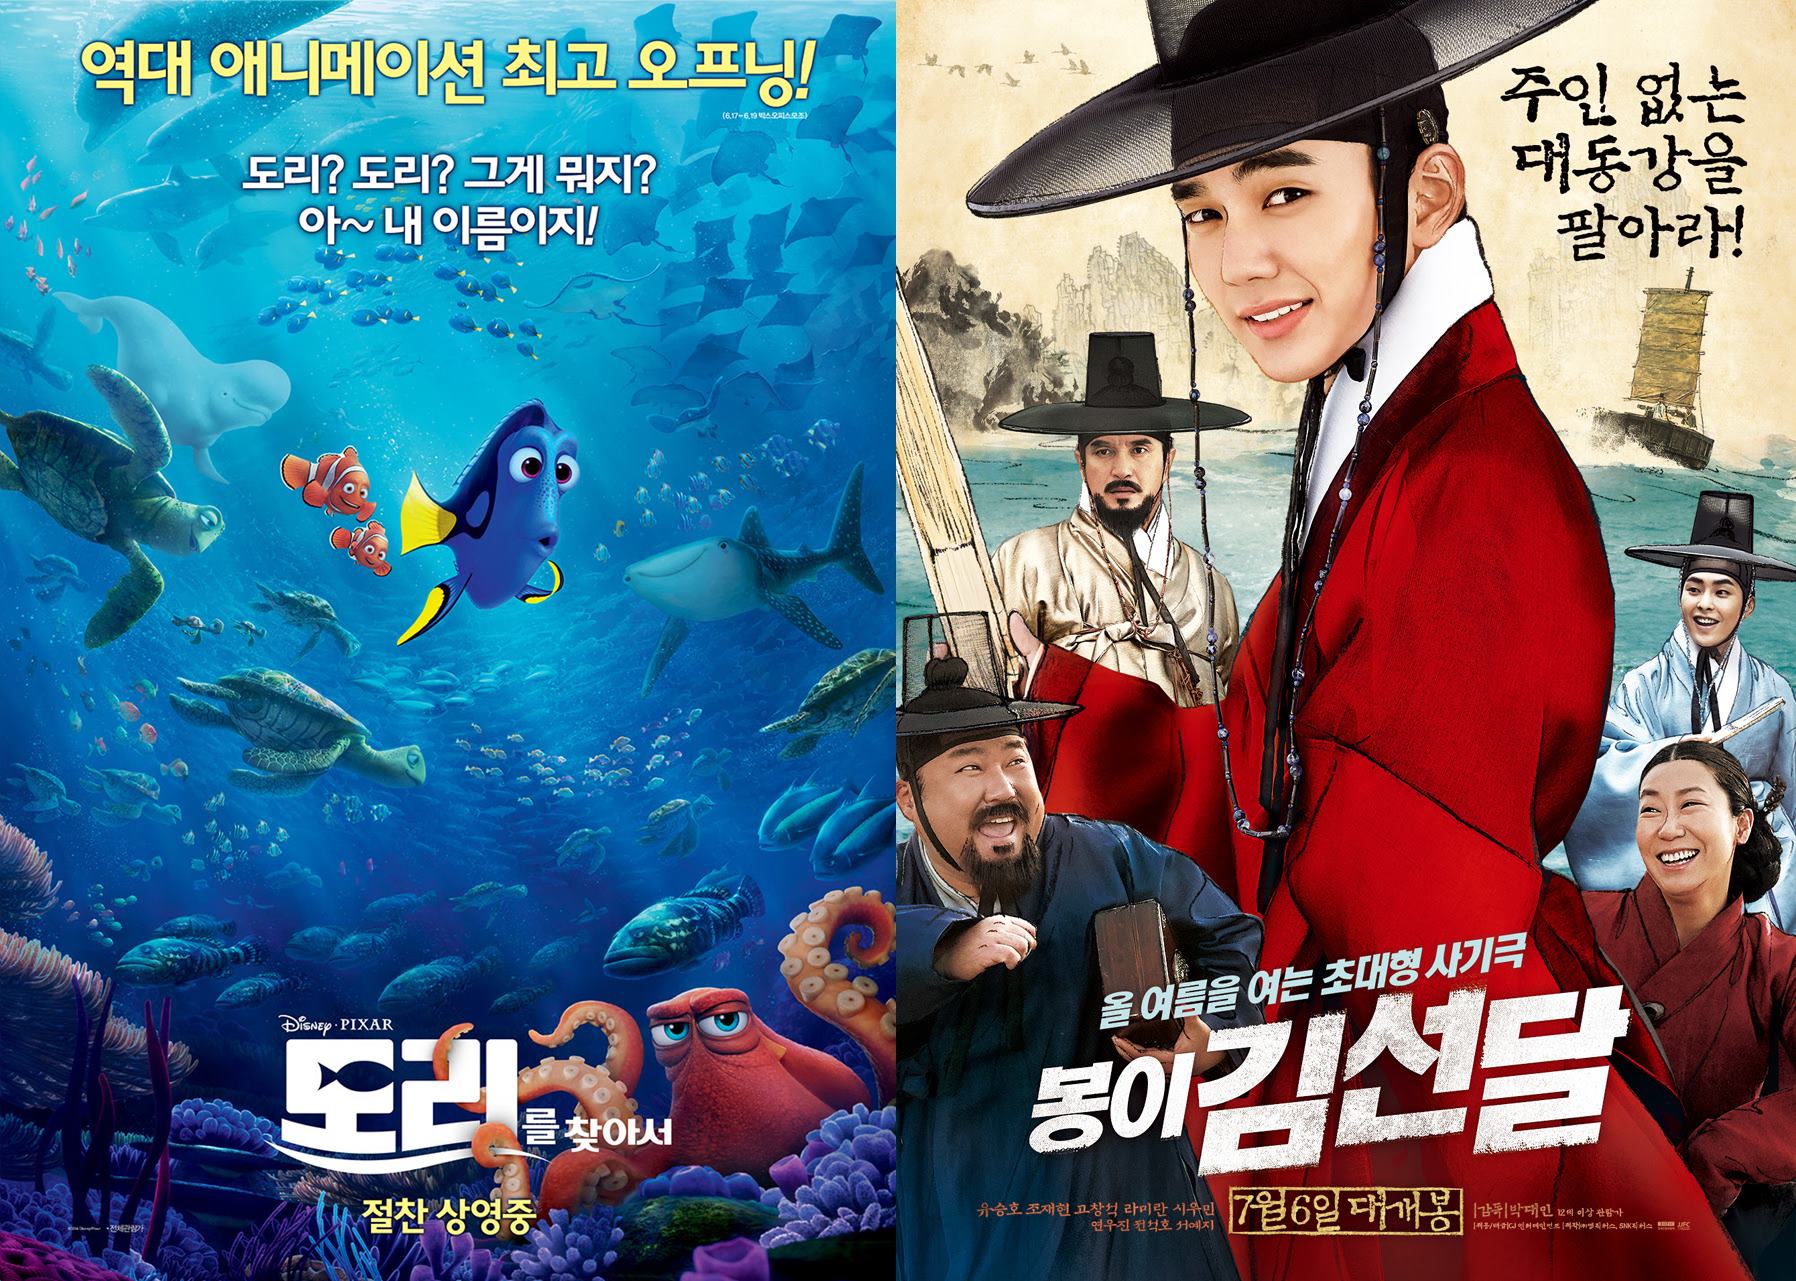  영화 <도리를 찾아서>와 <봉이 김선달>의 포스터.